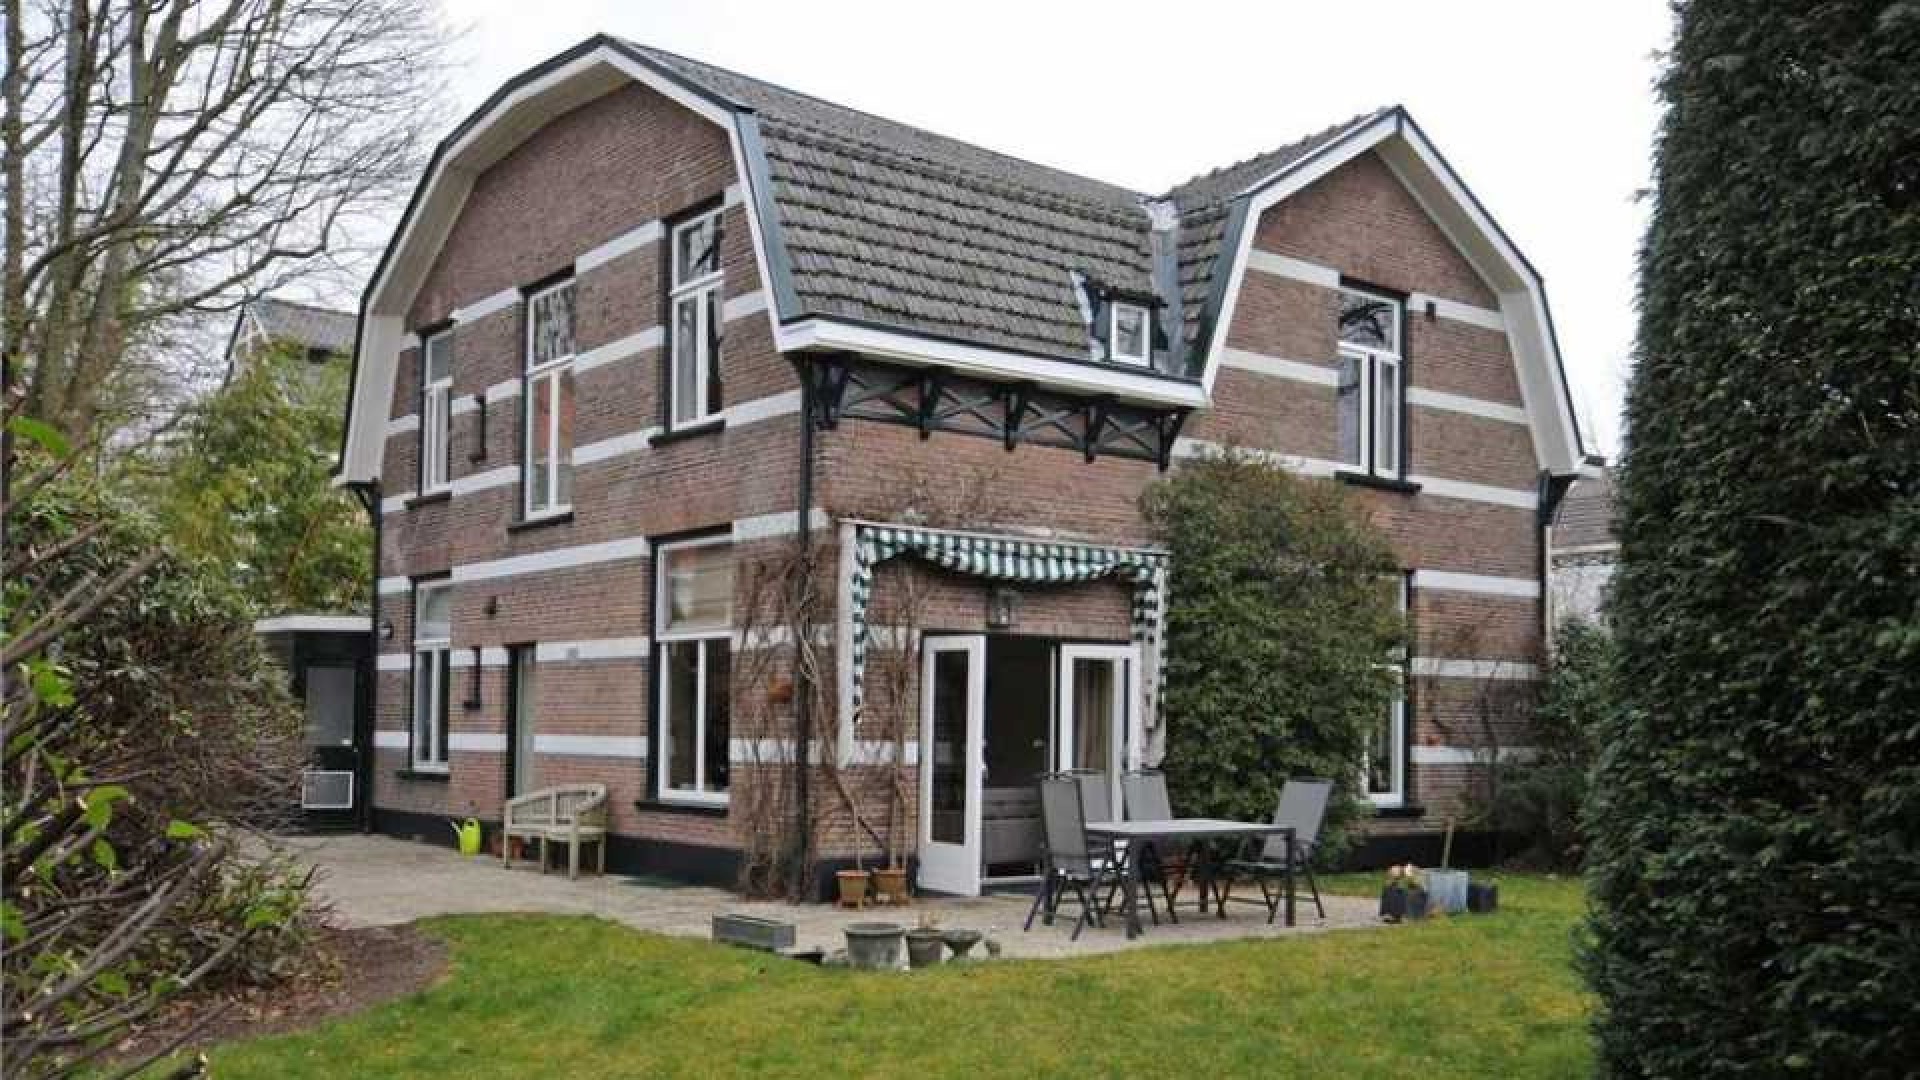 Frits Sissing scoort vette winst op verkoop van zijn oude huis. Zie foto's 13